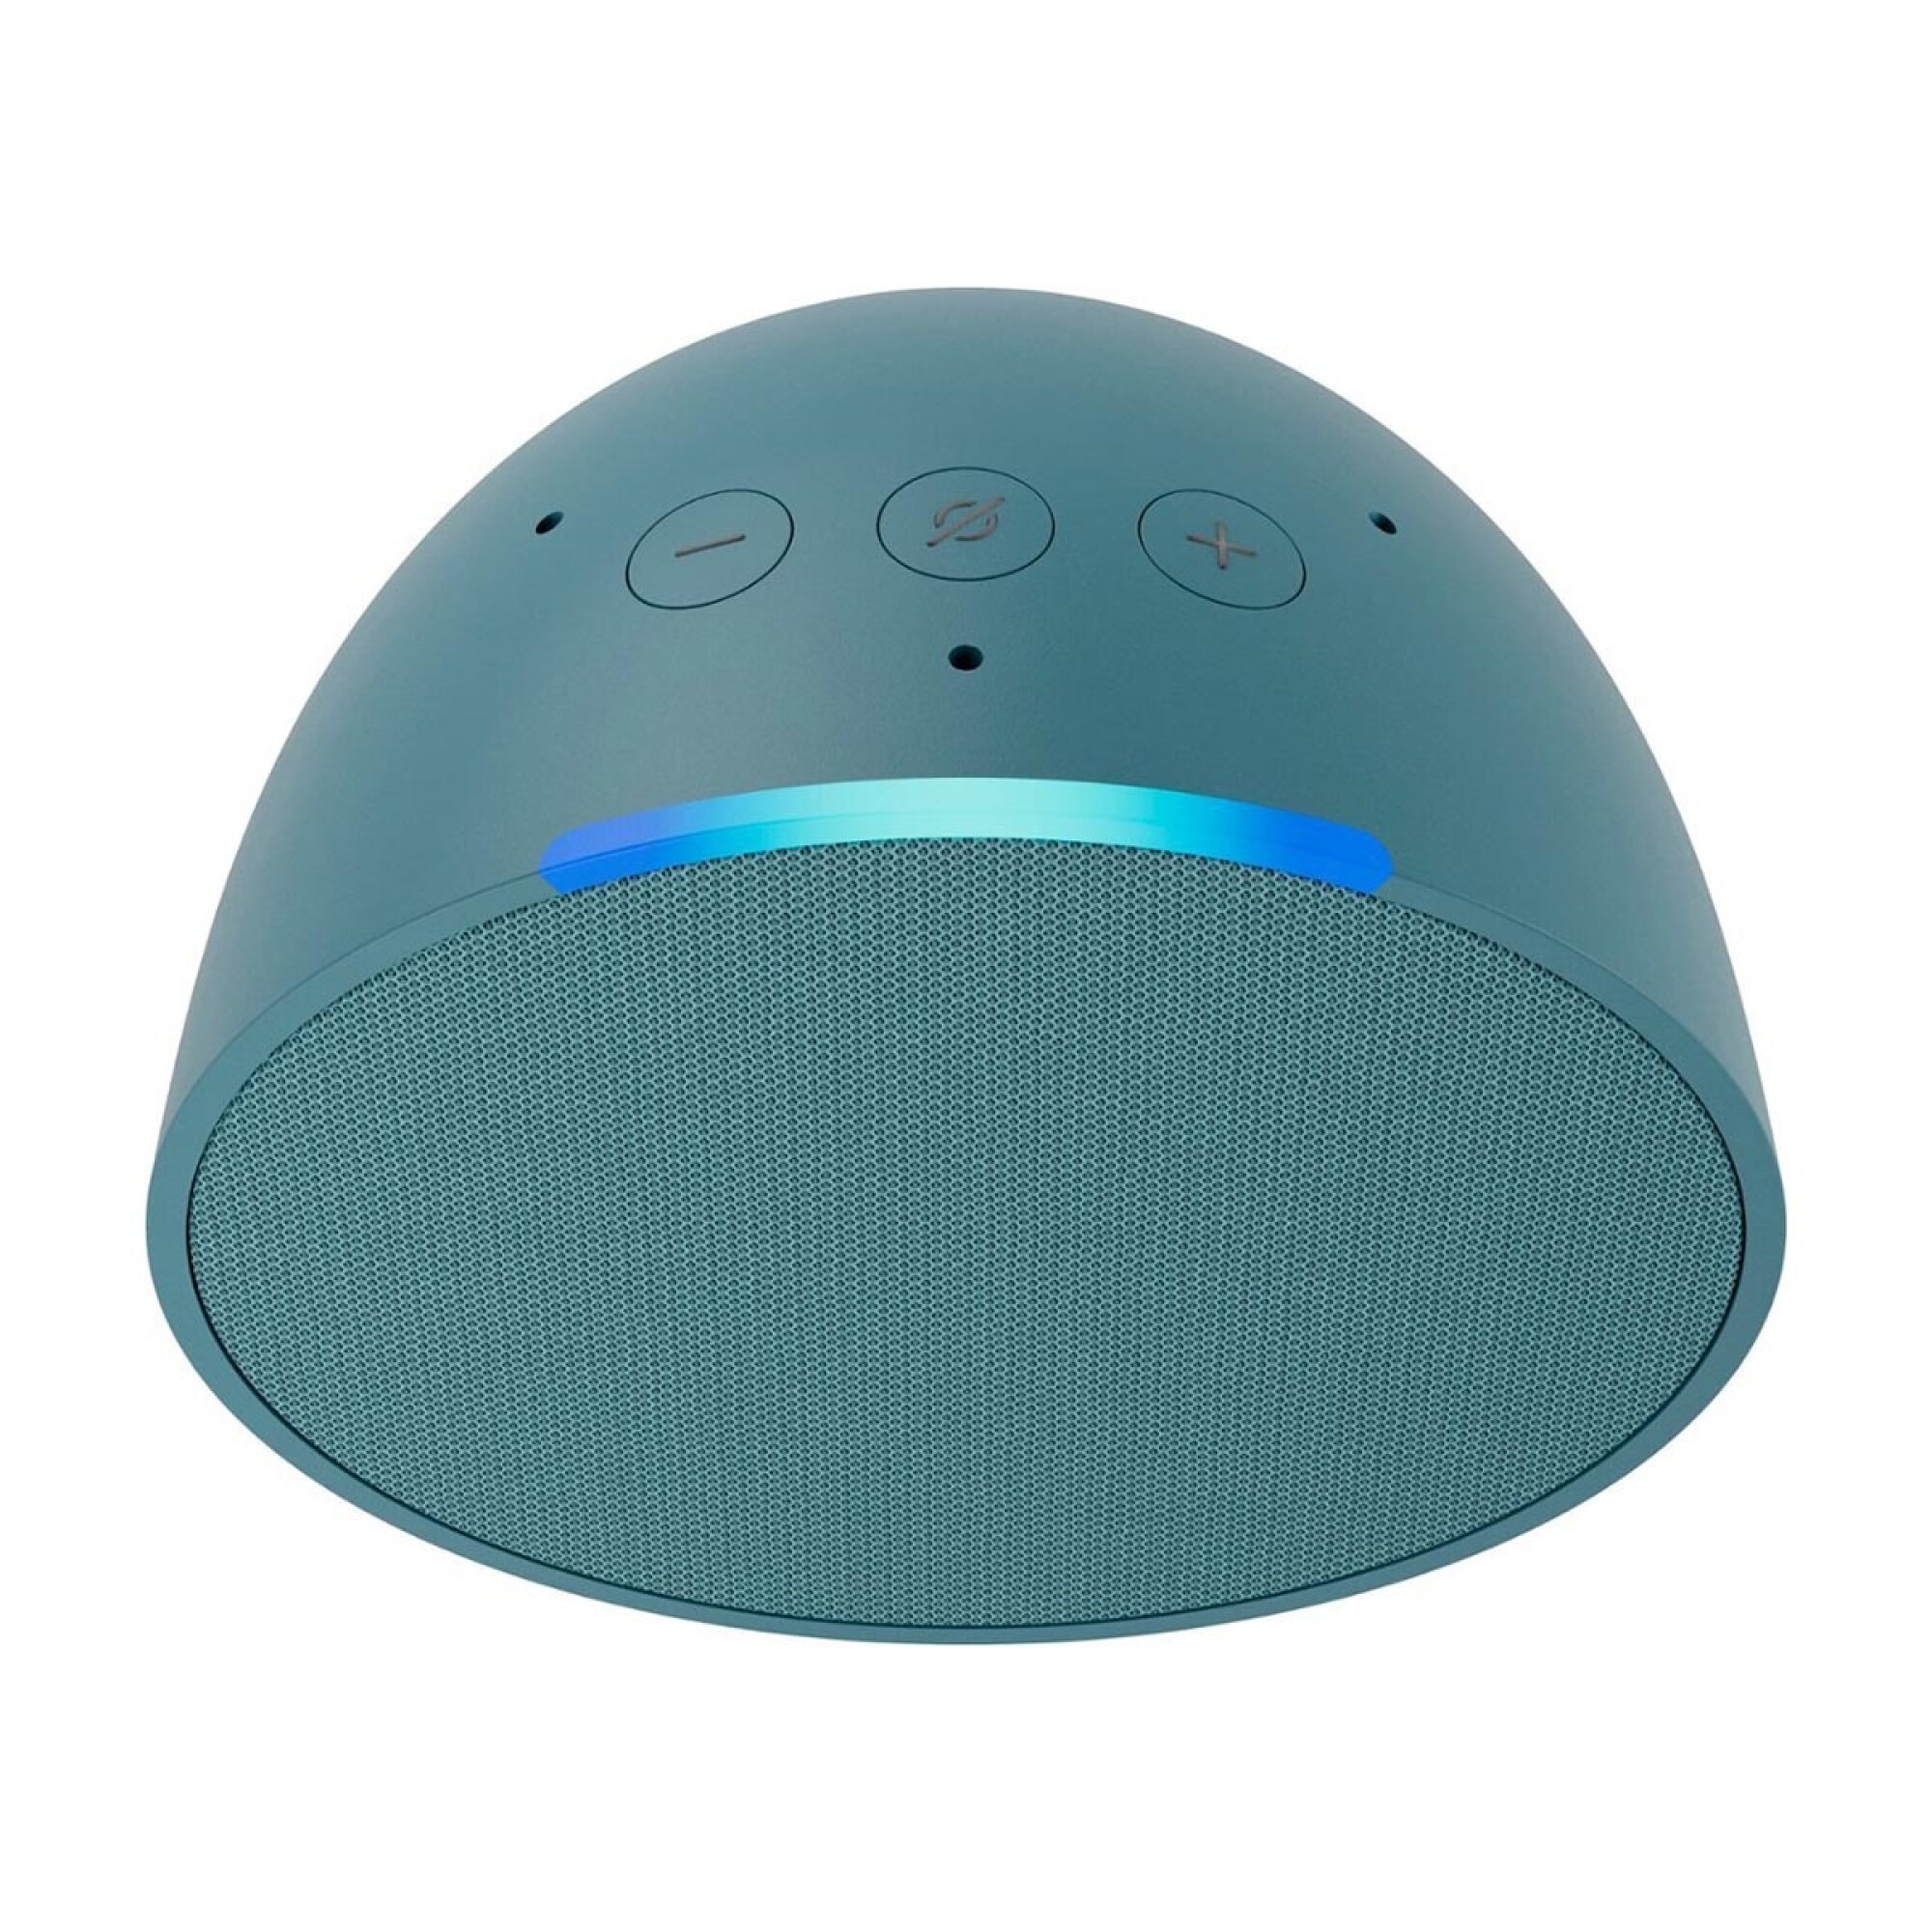 Altavoz Inteligente  Echo Pop – con el Asistente Alexa